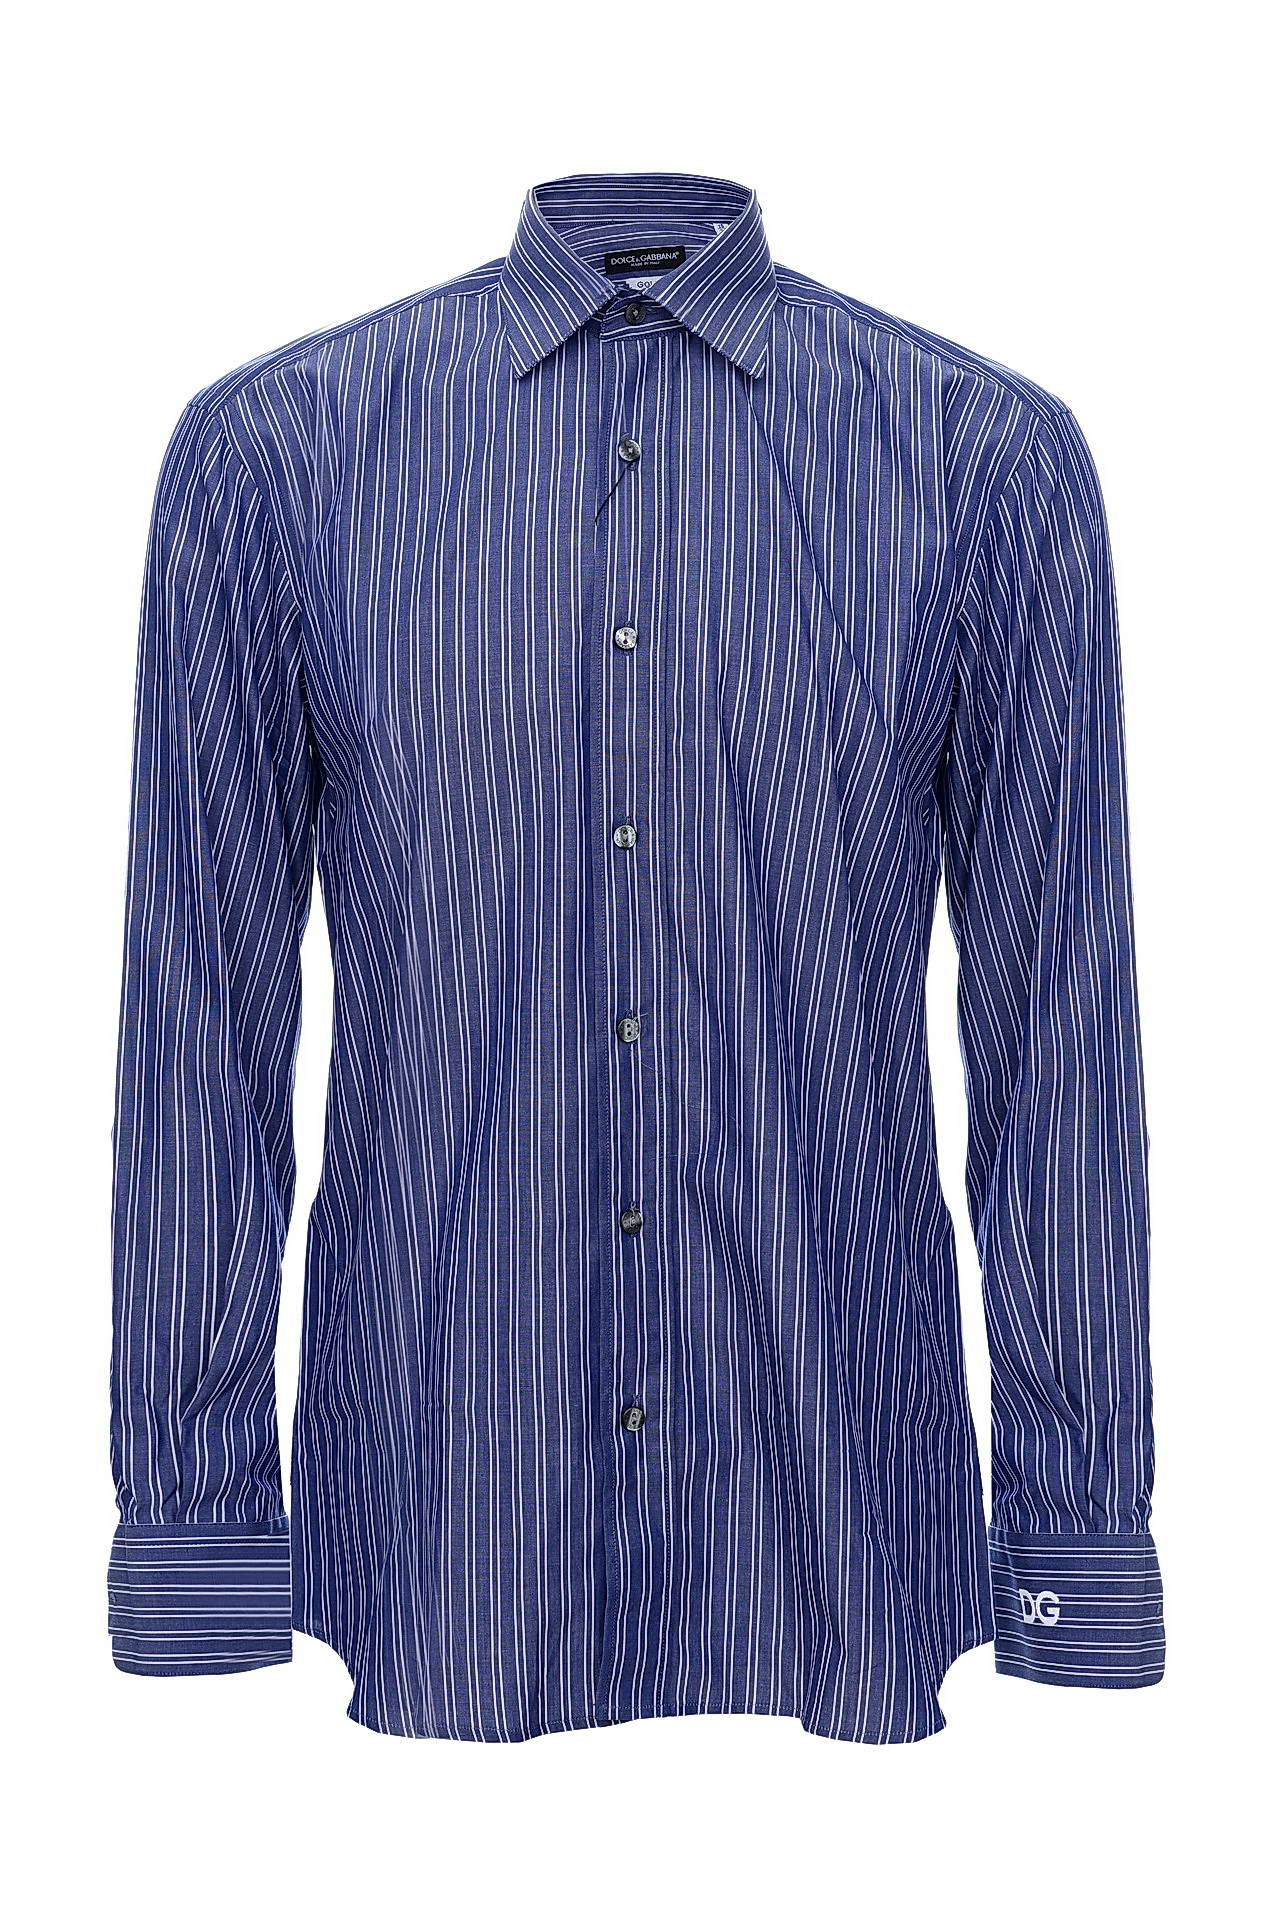 Одежда мужская Рубашка DOLCE & GABBANA (Y01000/14.1). Купить за 9030 руб.